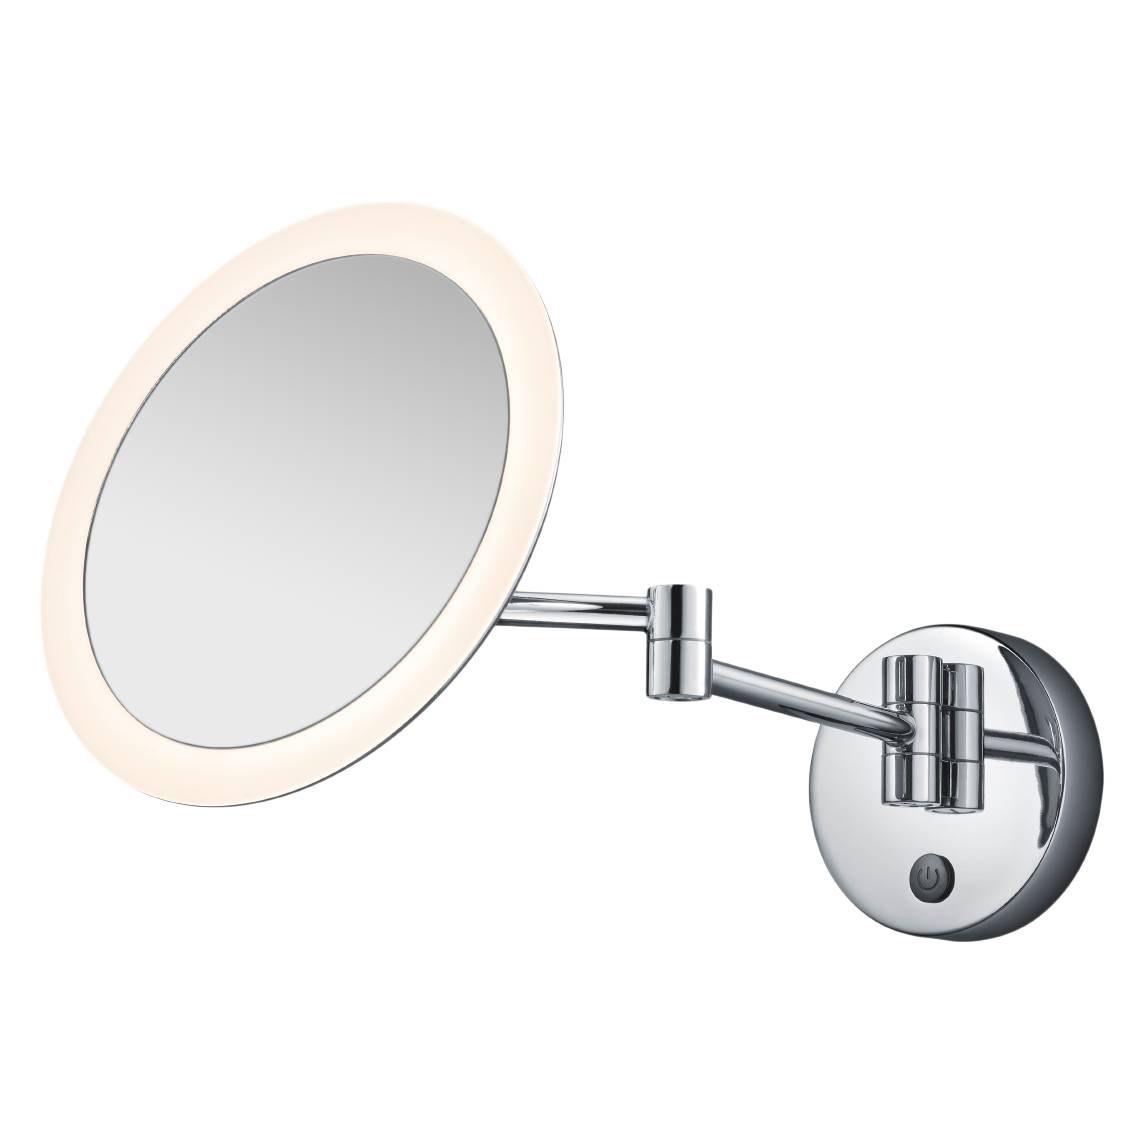 EEK A+, LED-Spiegelleuchte View Mirror I - Spiegelglas / Metall - 1-flammig, Trio